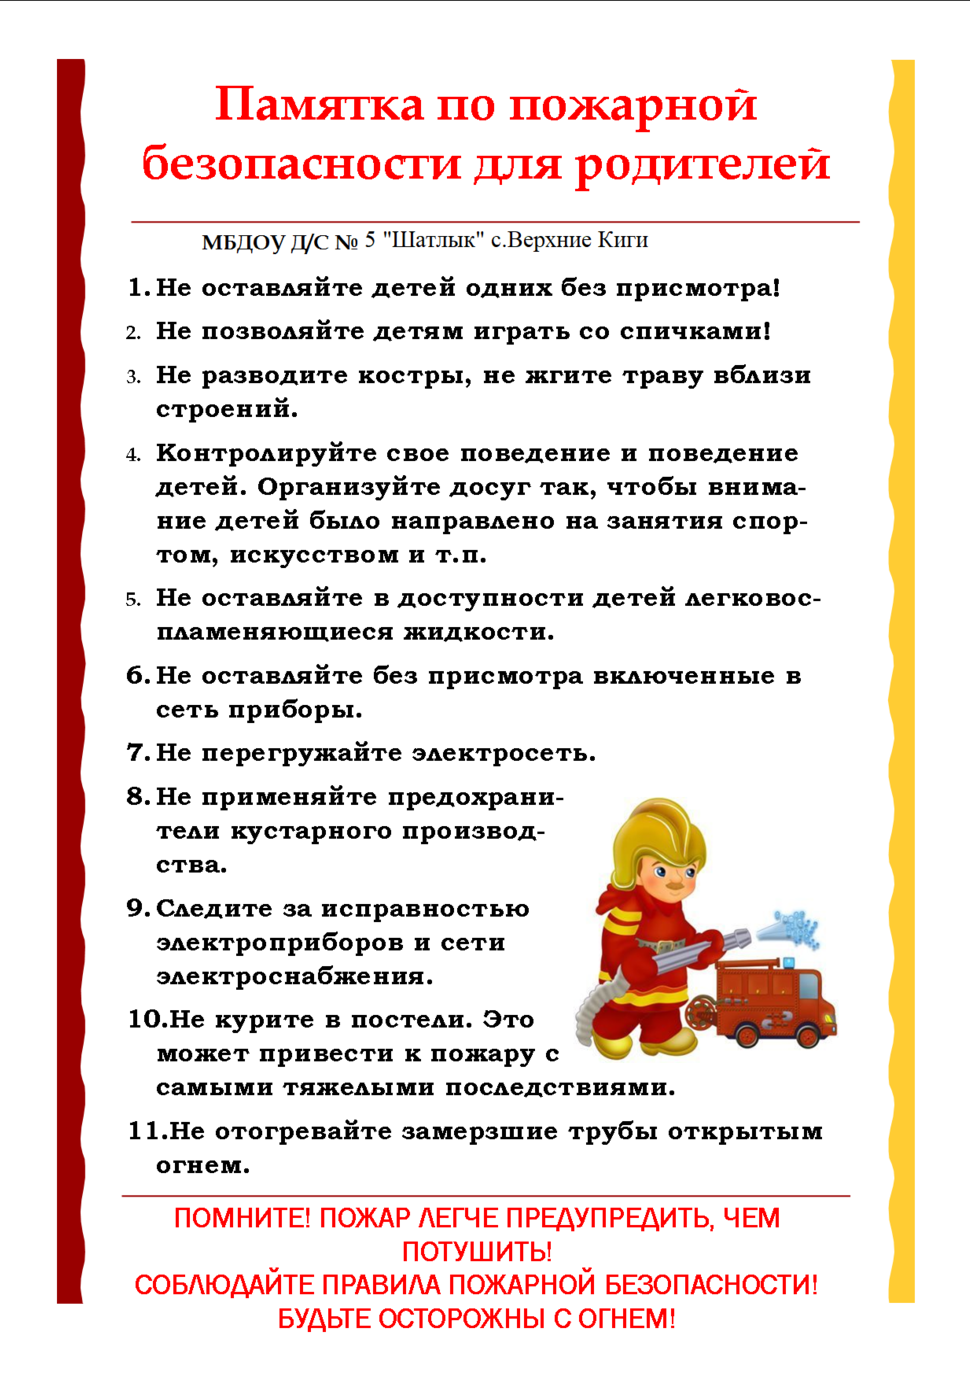 Правила пожарной безопасности для школьников.  каменнолавская средняя школа шкловского района